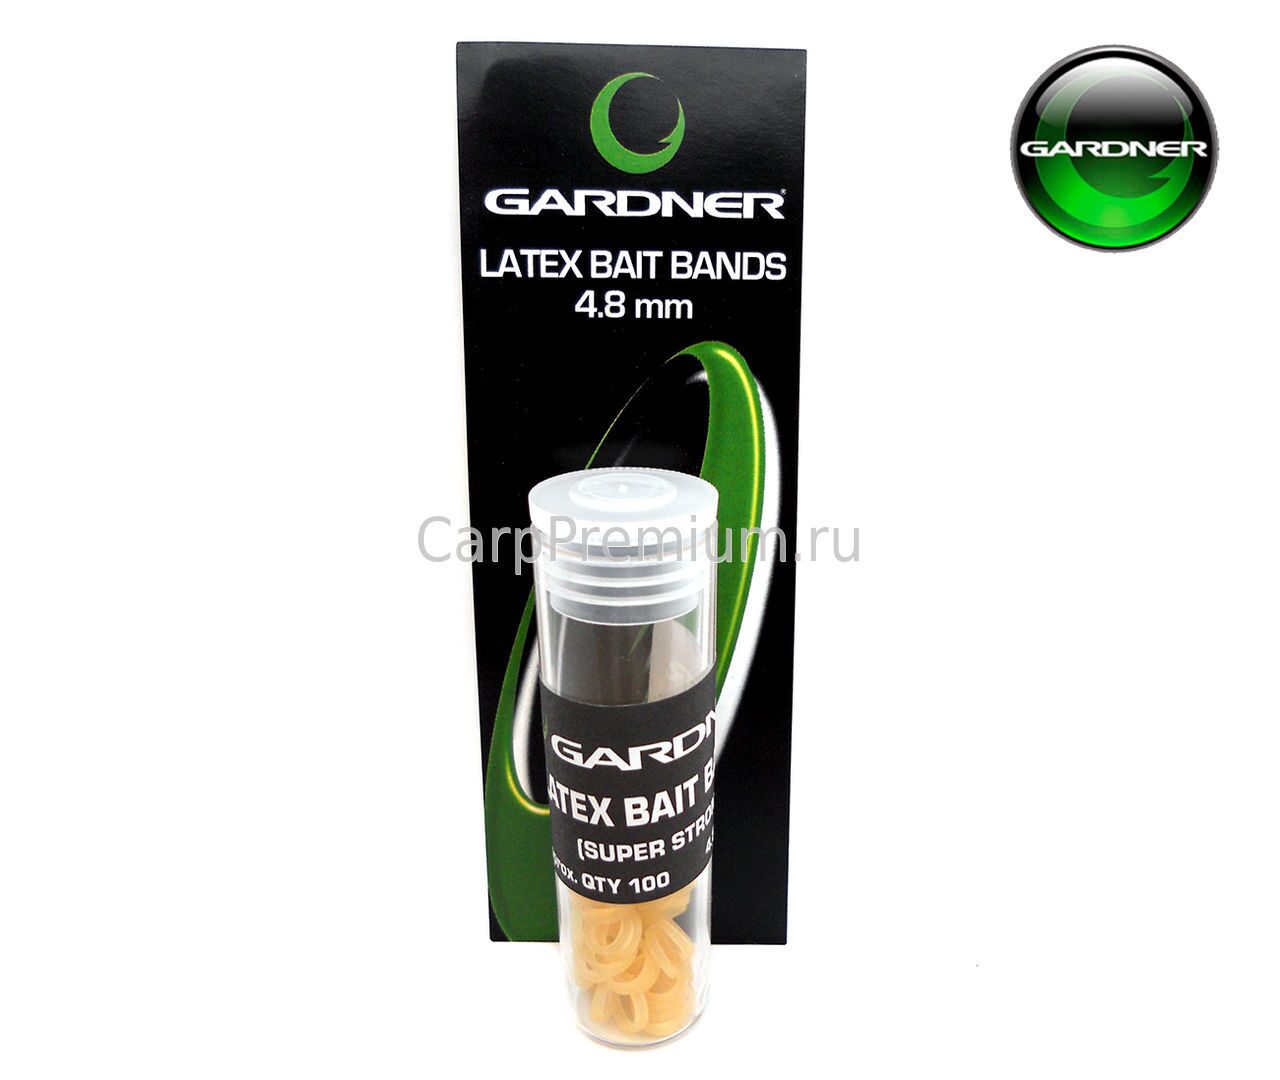 Силиконовое кольцо для Поп-ап 4.8 мм Gardner (Гарднер) - Latex Bait Band, 100 шт